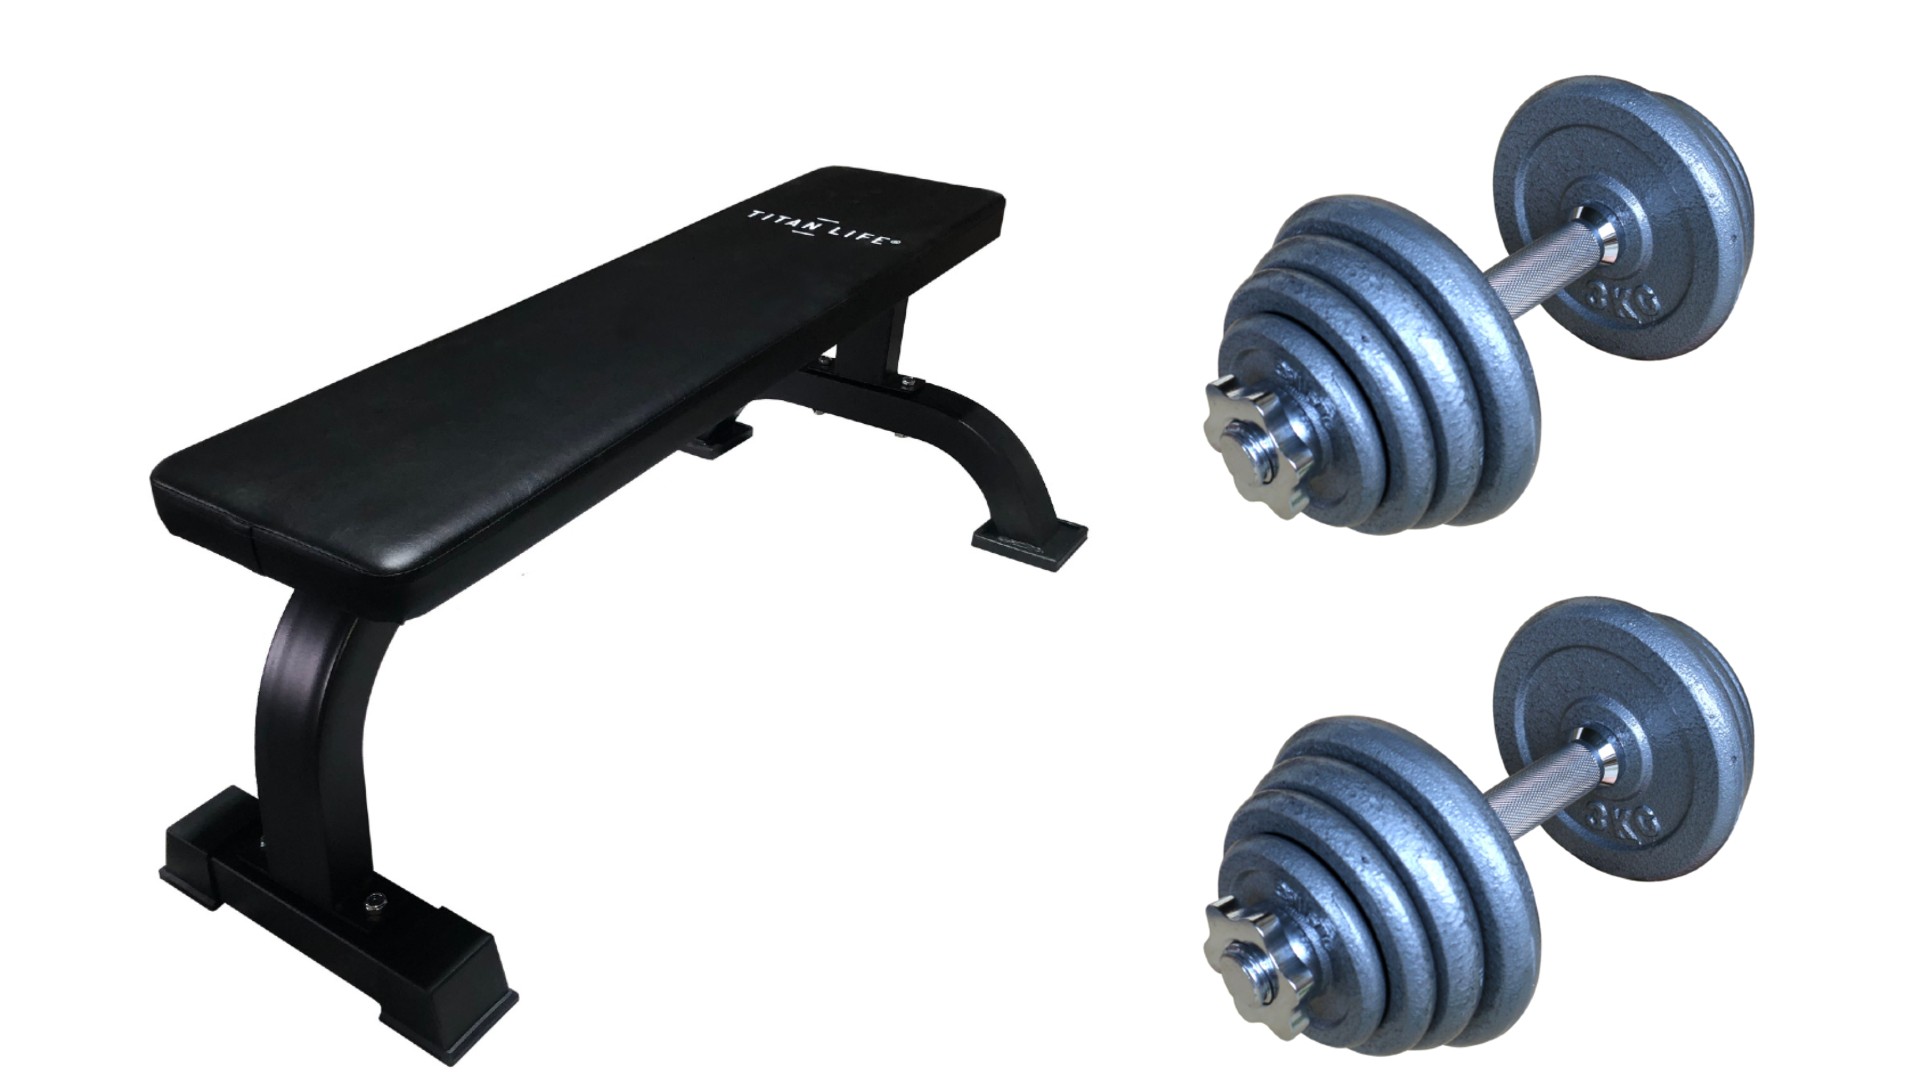 Billede af TITAN LIFE Bench Flat Basic m/håndvægte - FRI FRAGT - Træningsbænk & 2 håndvægte á 15 kg